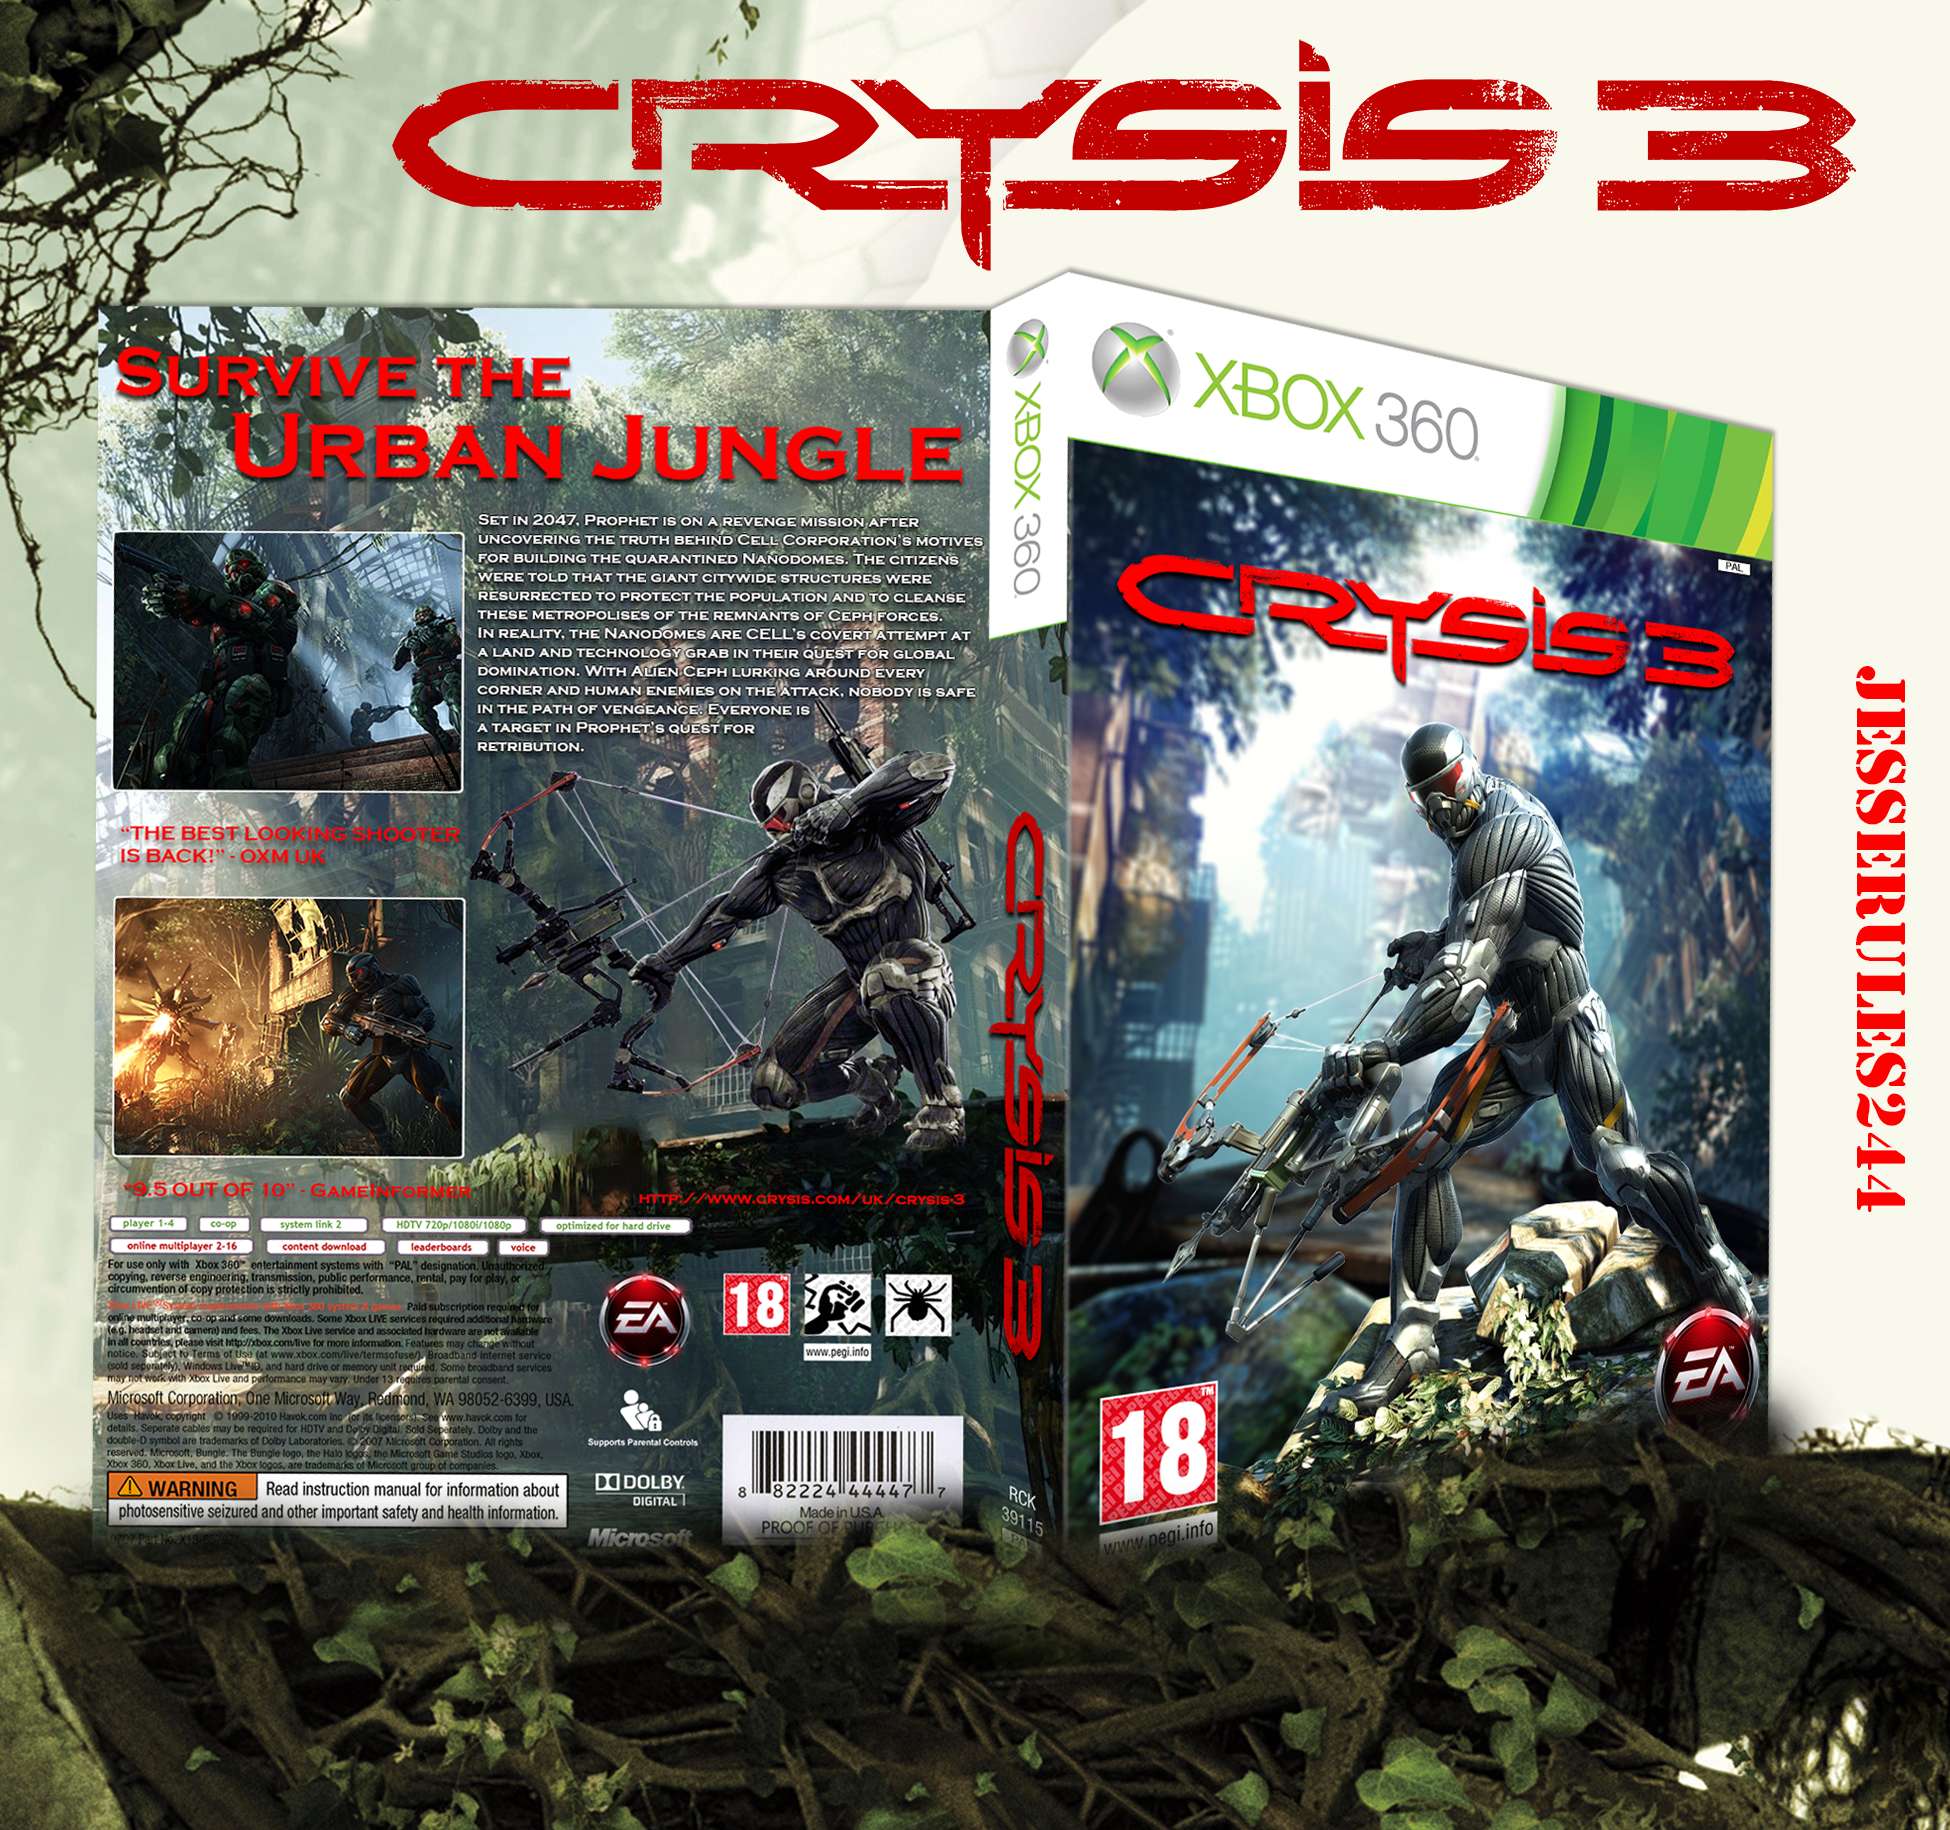 Crysis xbox 360. Crysis 2 Xbox 360 диск. Crysis 3 Xbox 360 Cover. Игра про зомби на Икс бокс 360 в виде крайзиса. Crysis 2 Xbox 360 диск CD накат.